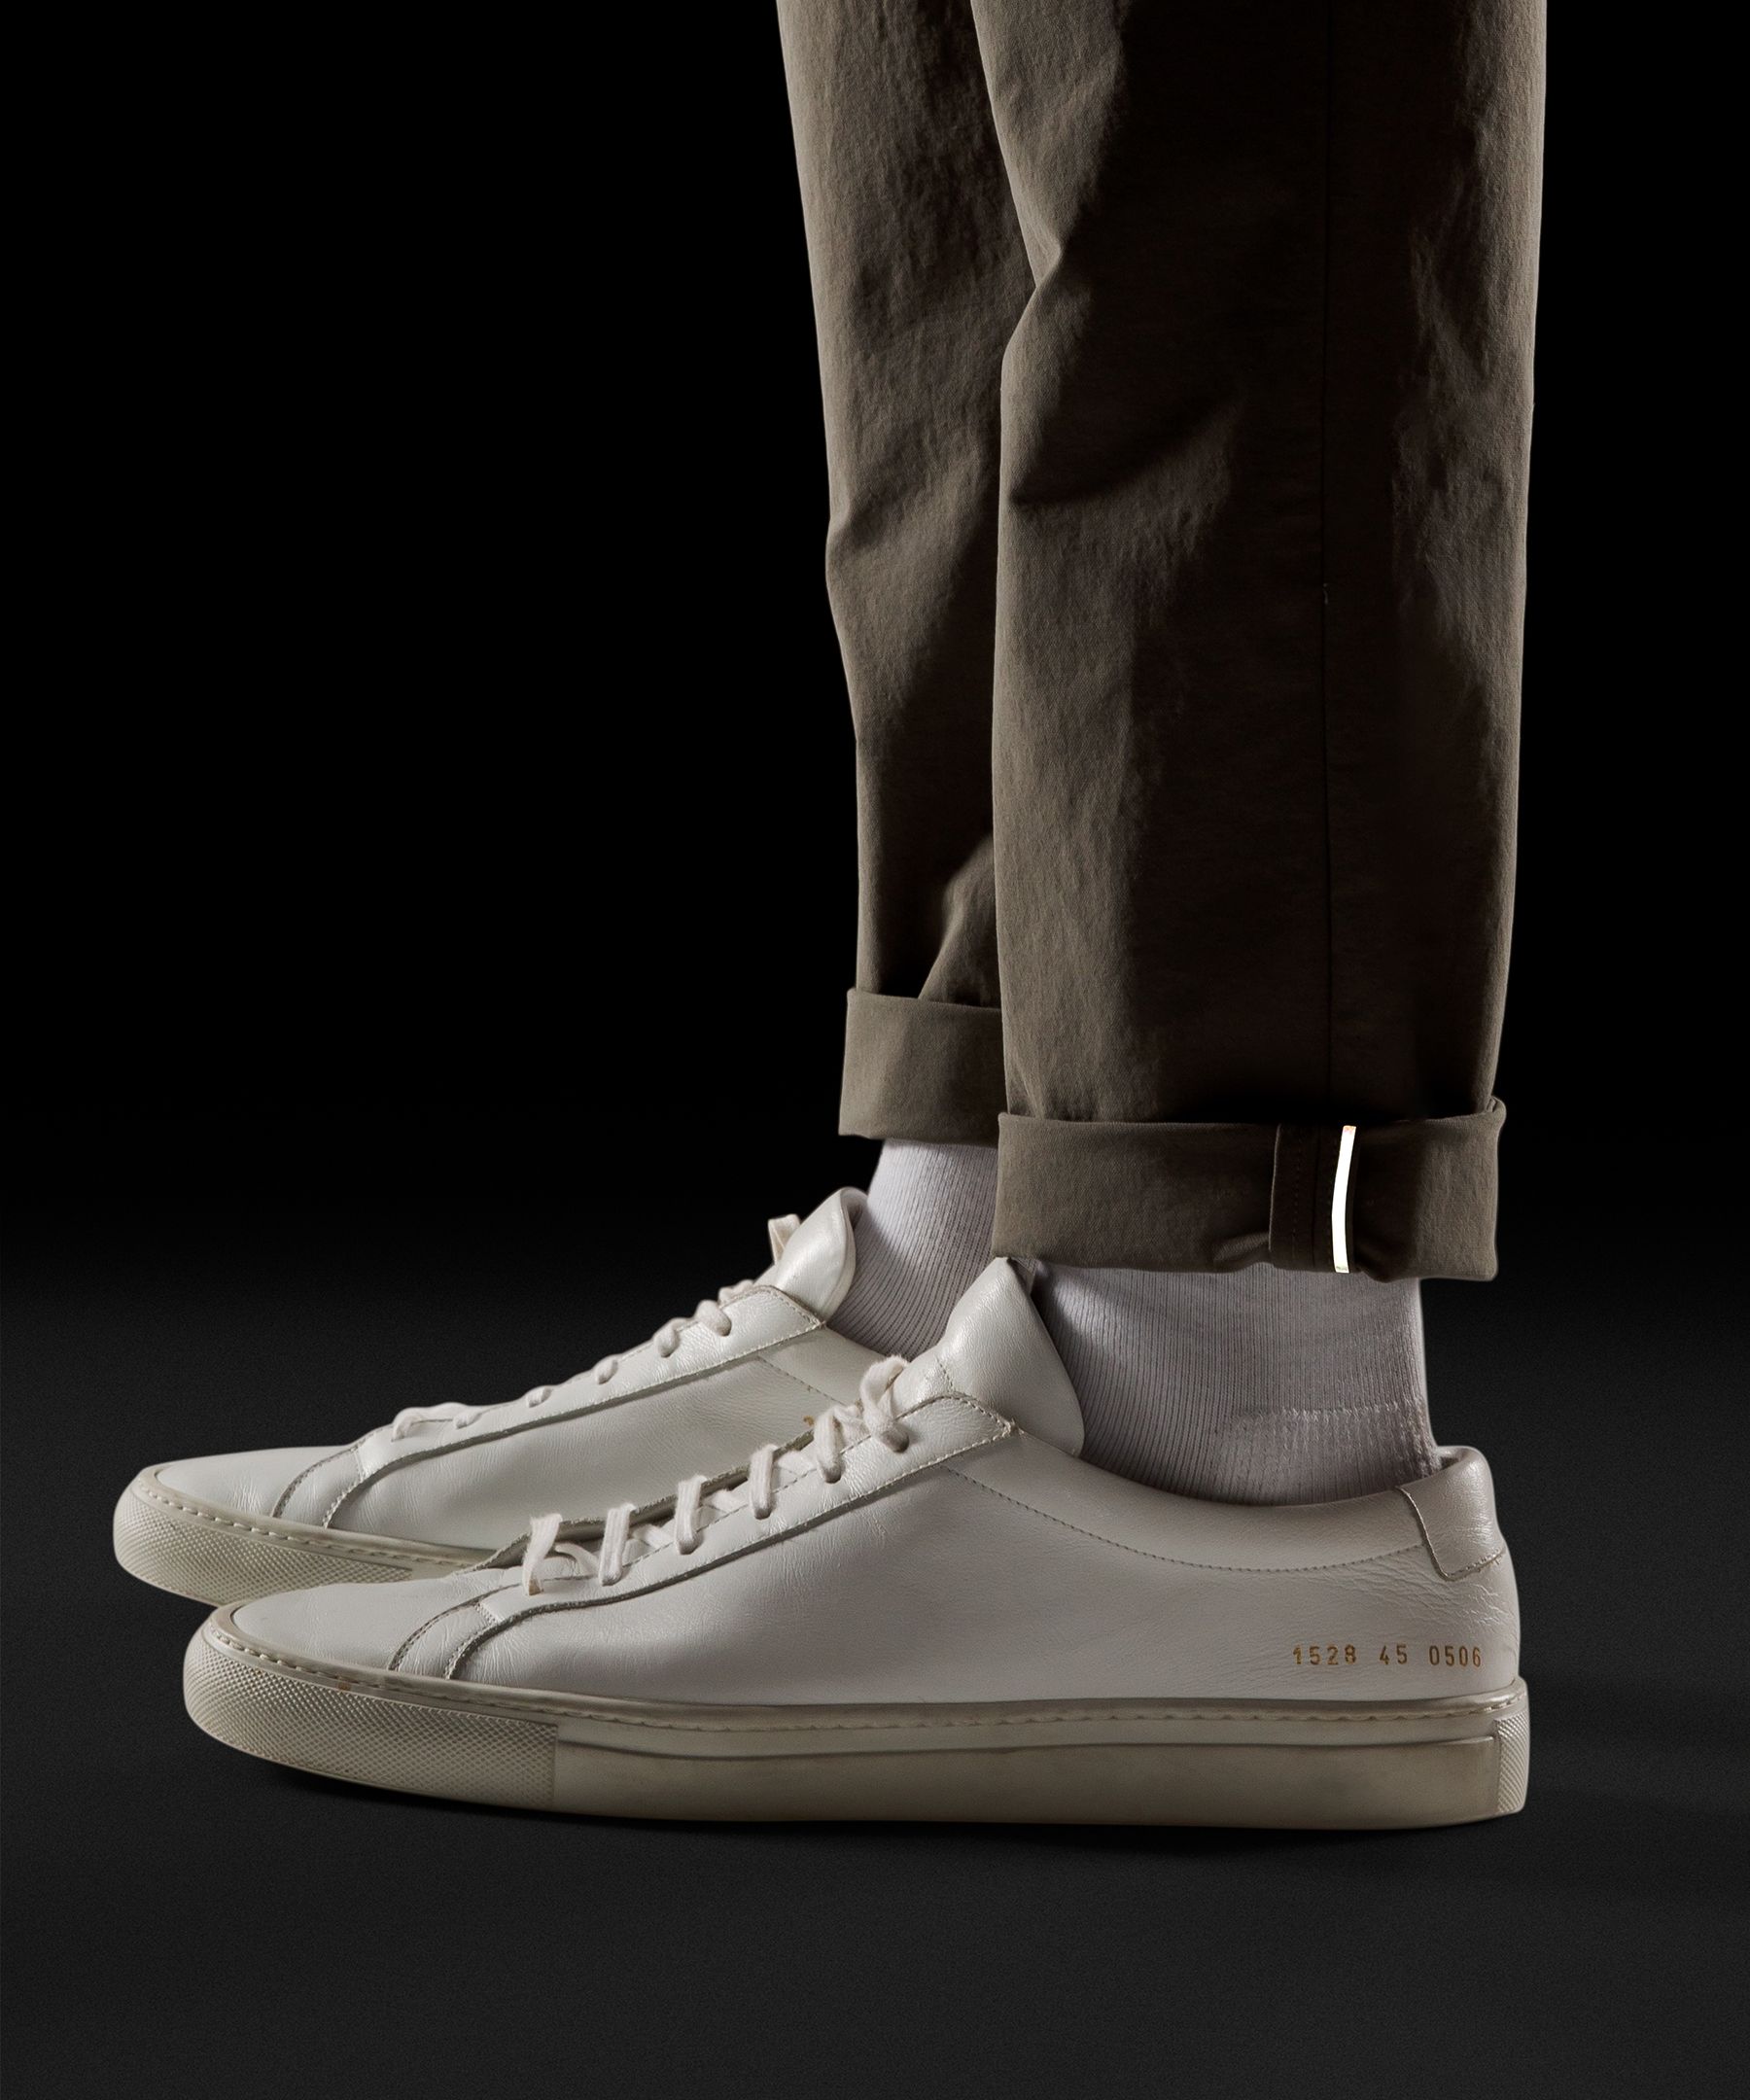 Shop Lululemon Abc Classic-fit Trousers 32"l Stretch Cotton Versatwill